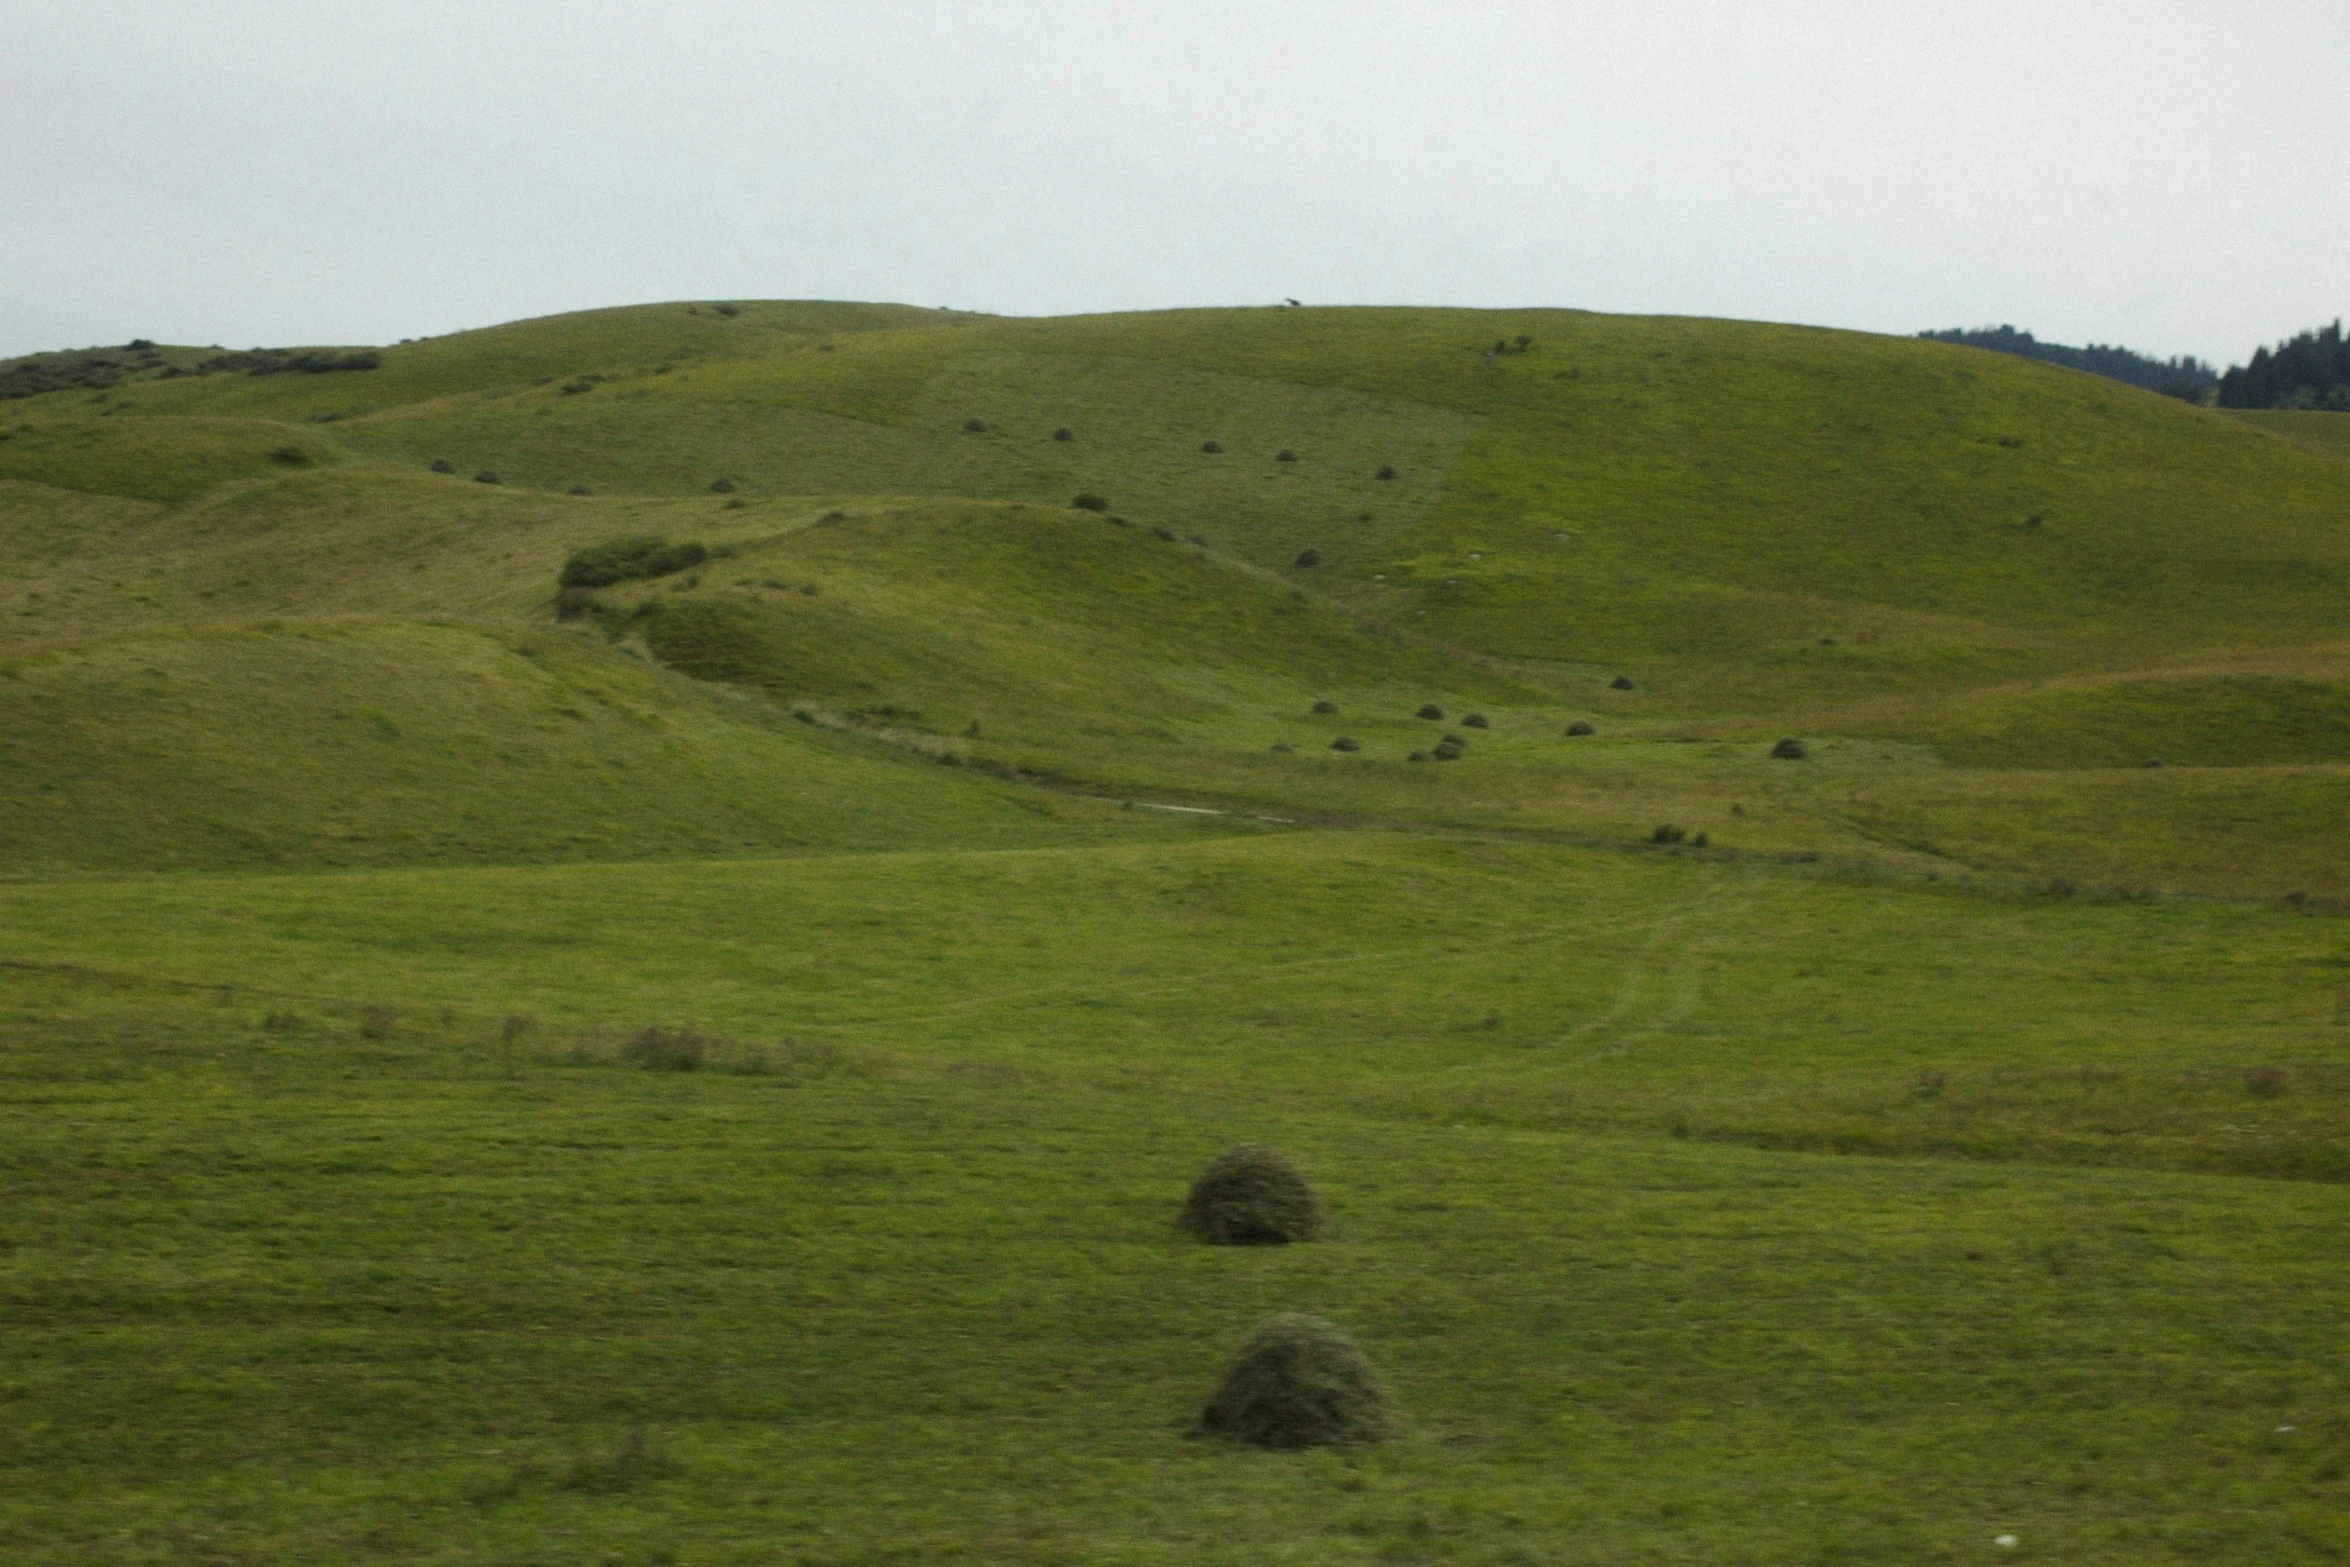 a horse grazes on a grass covered hillside